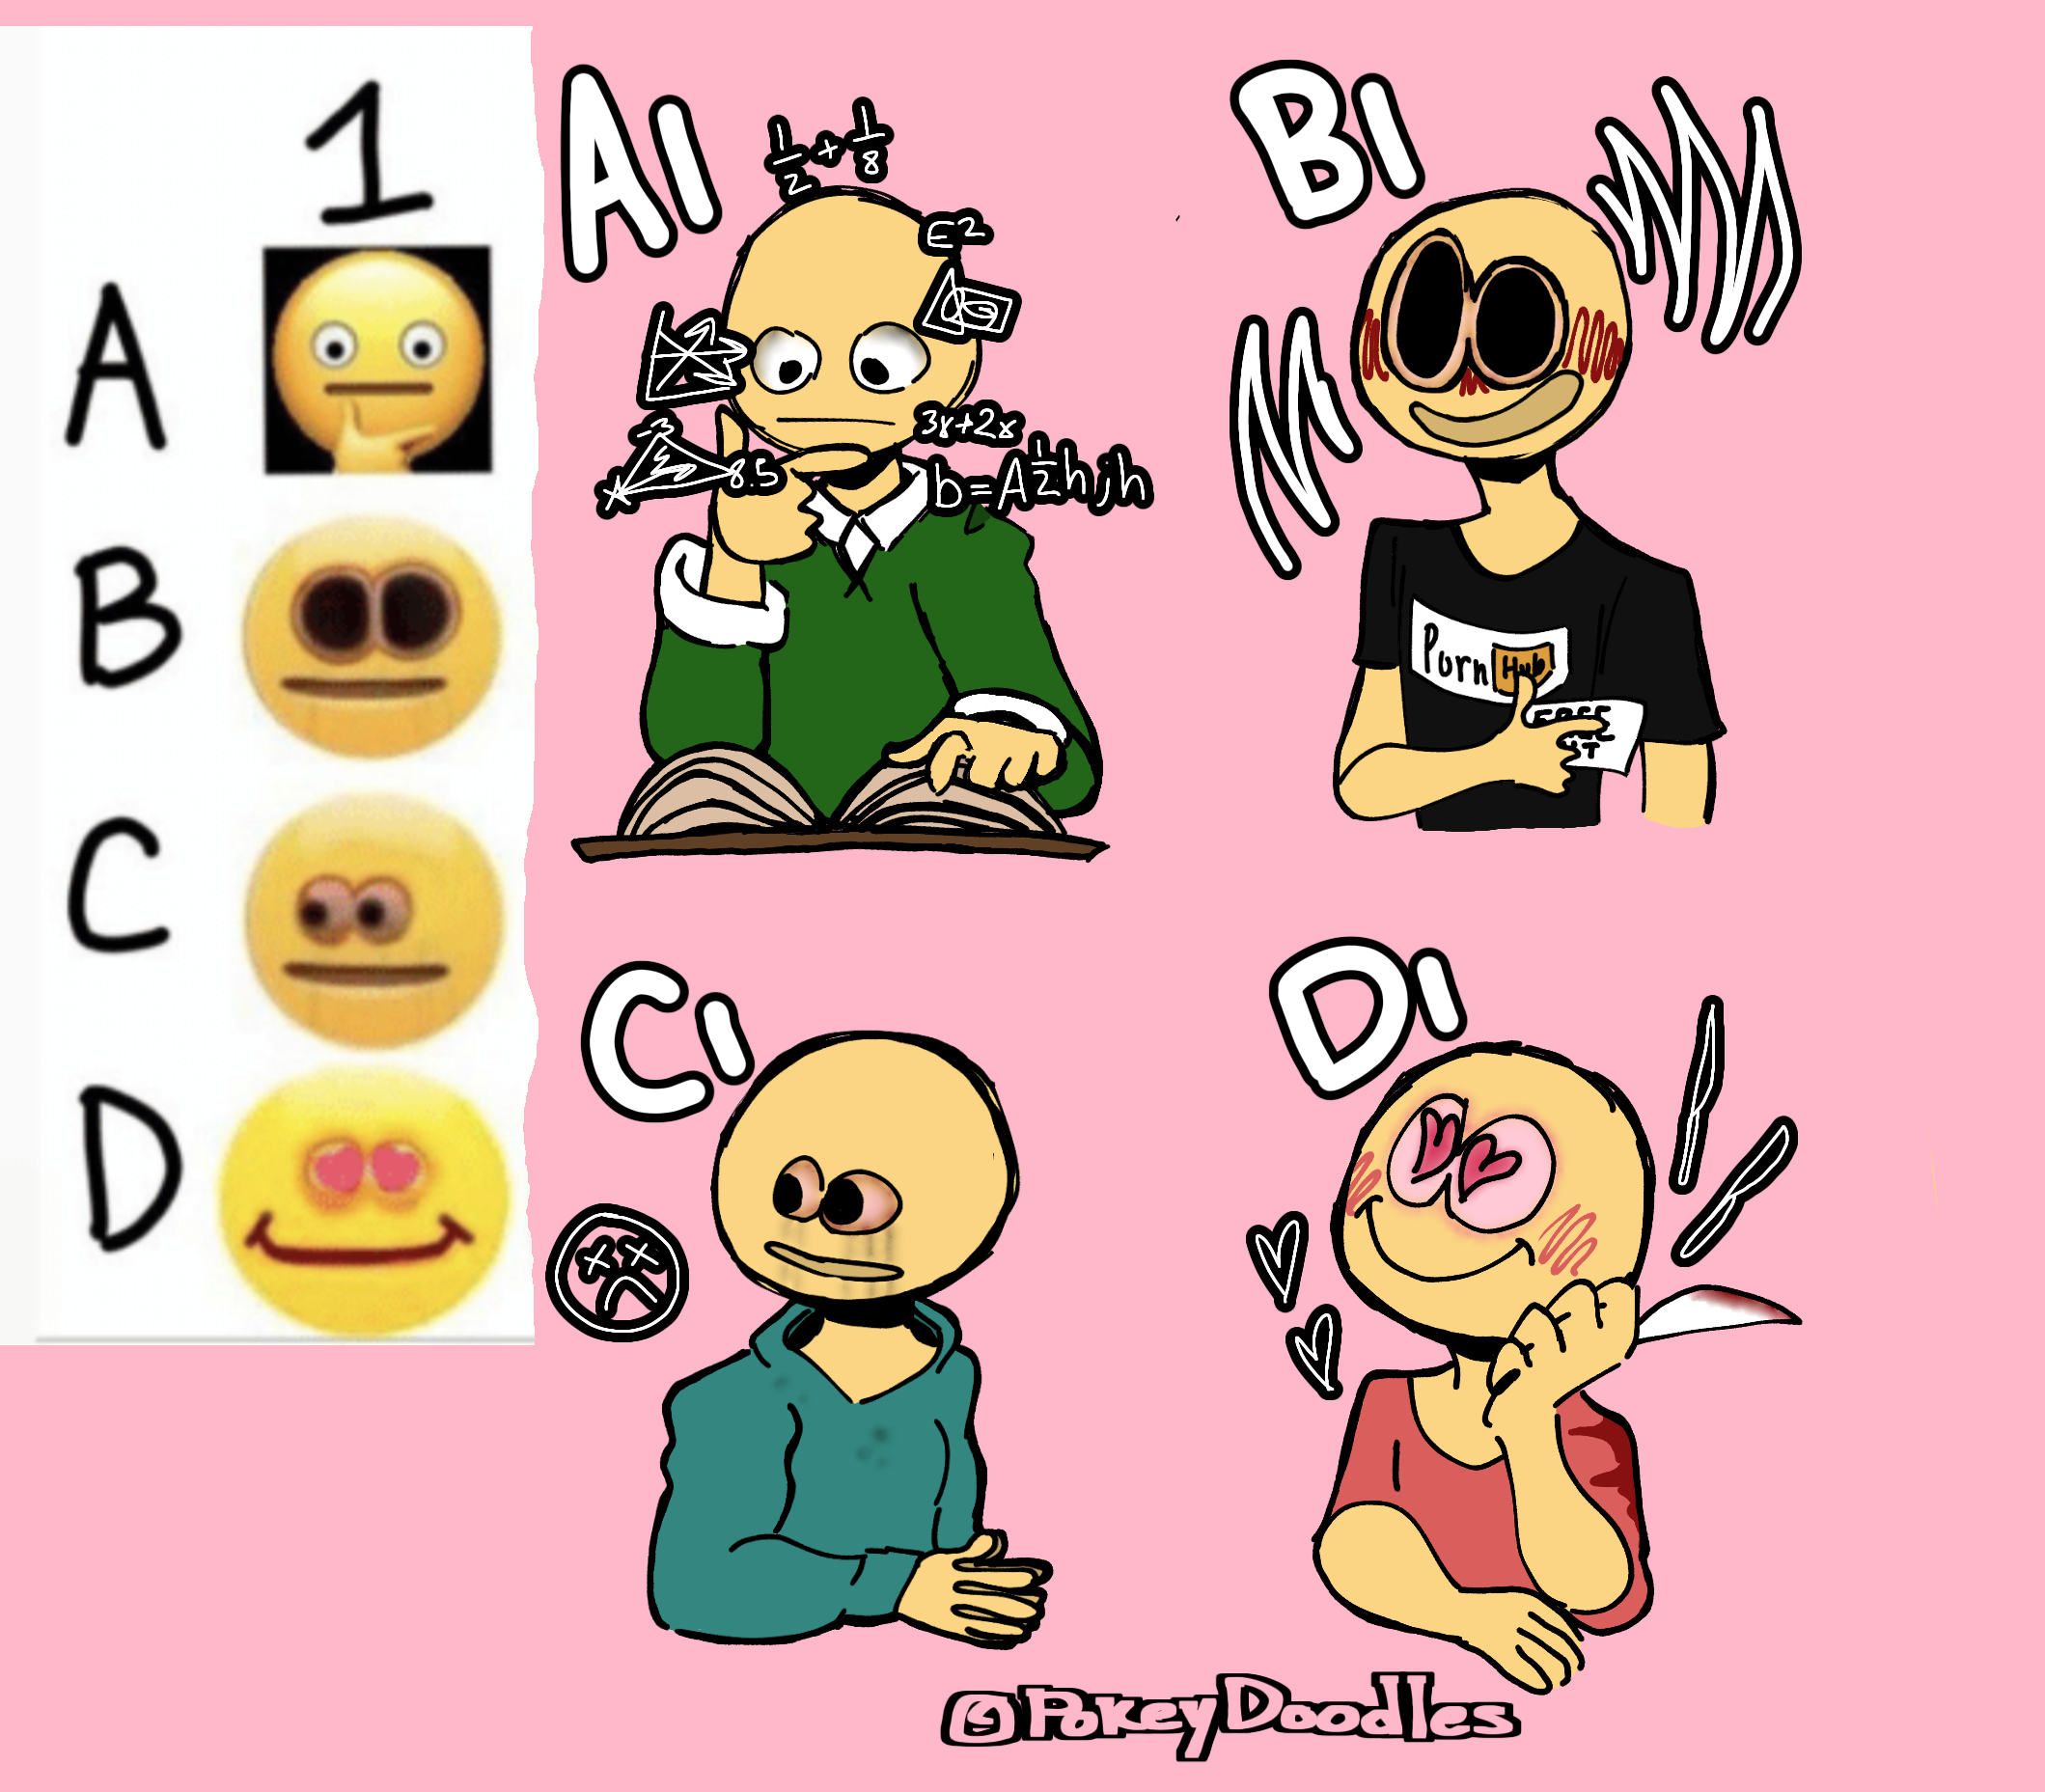 Cute sad emoji x cursed emoji - Drawception